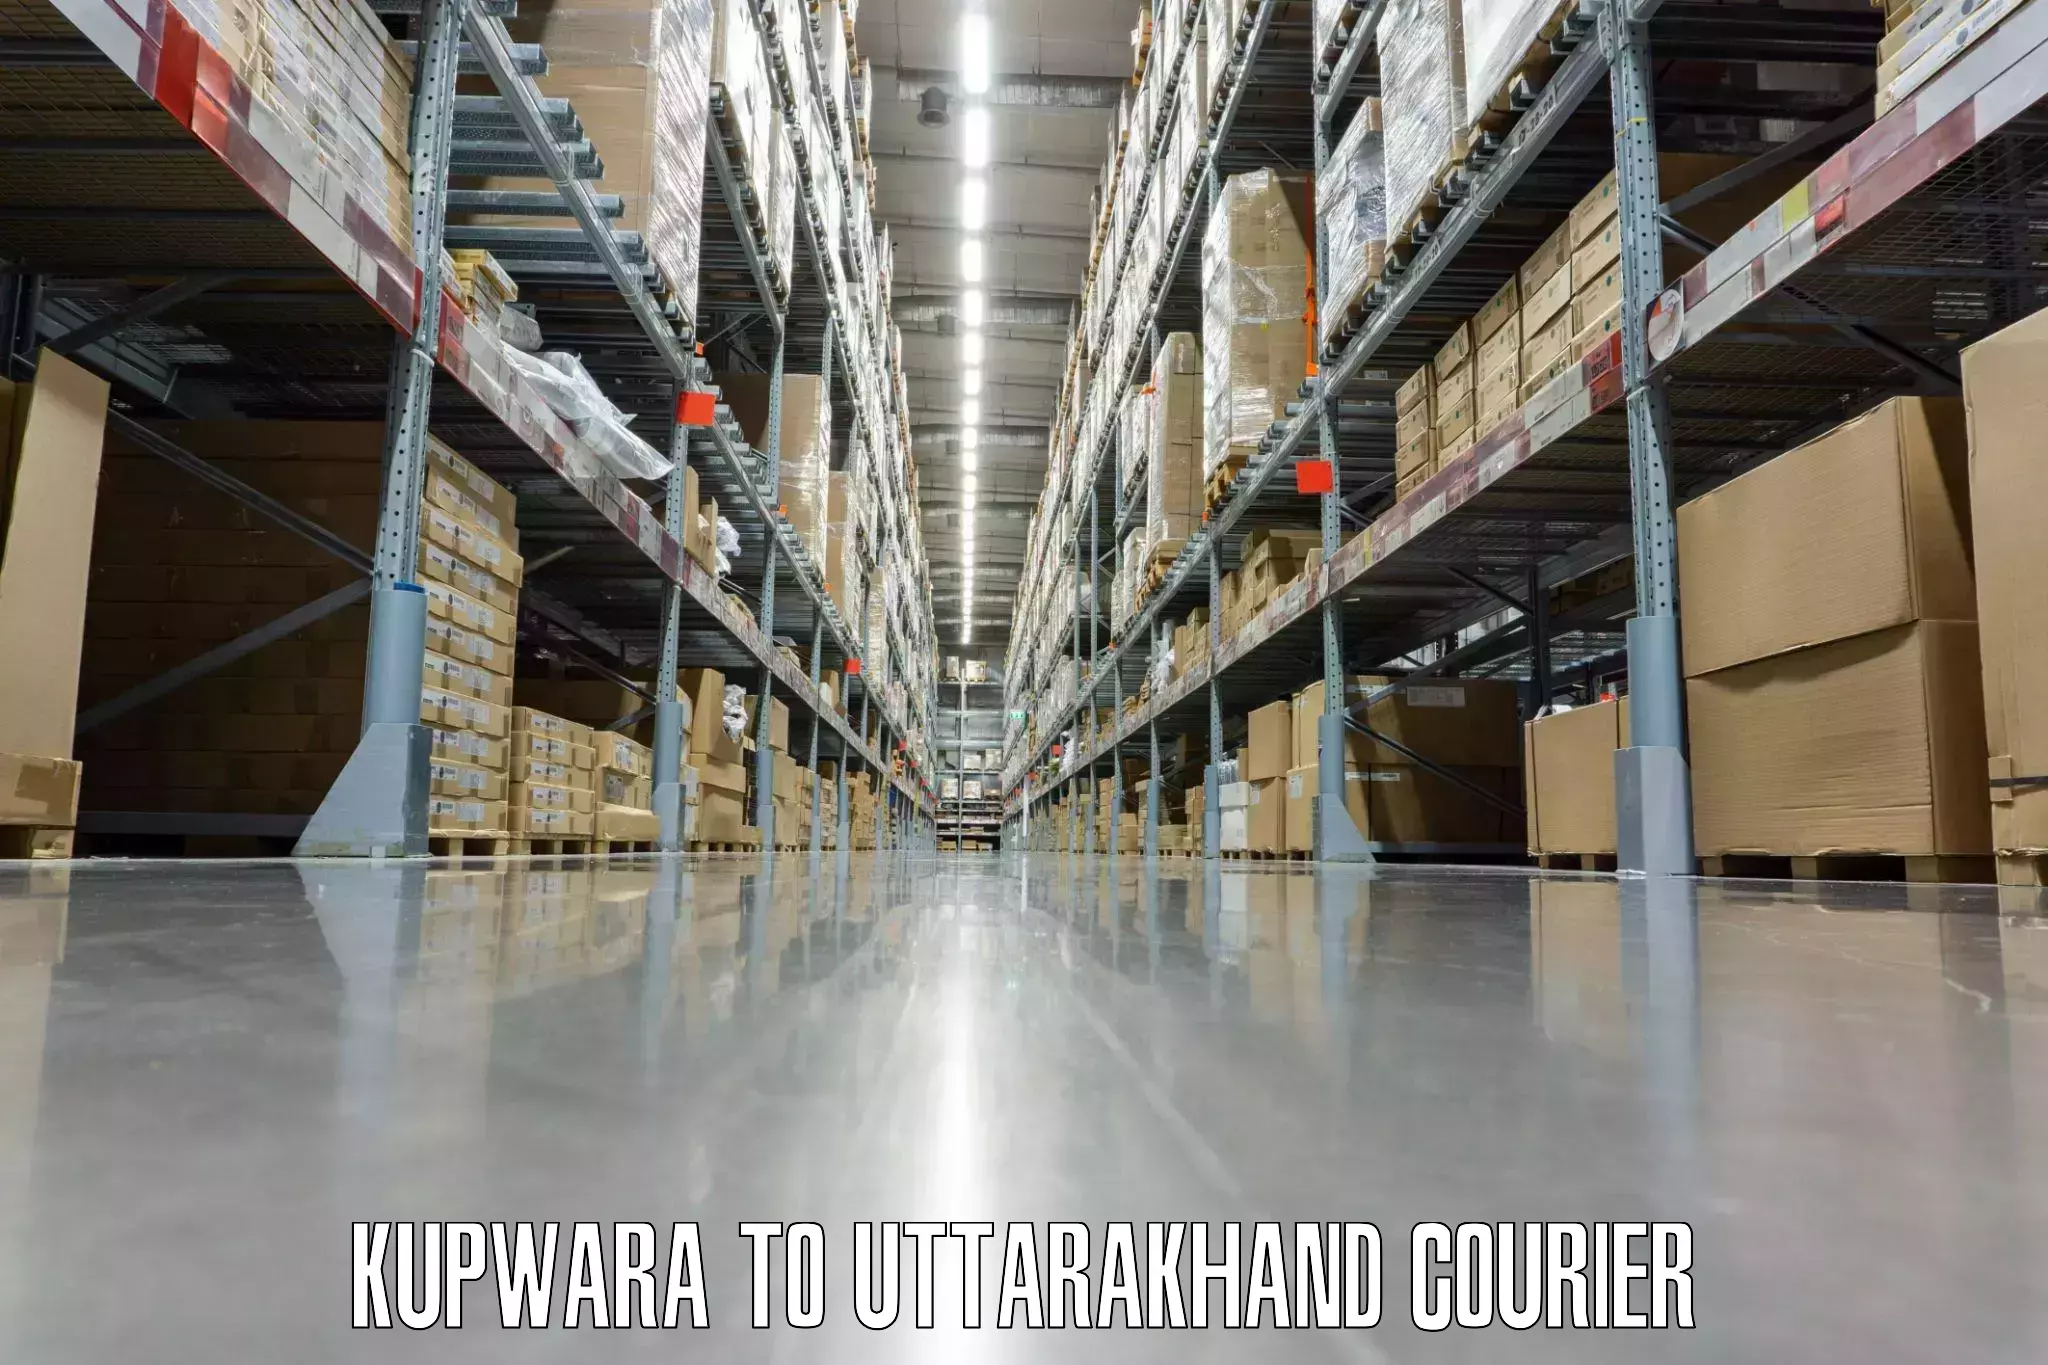 Luggage delivery optimization Kupwara to Uttarakhand